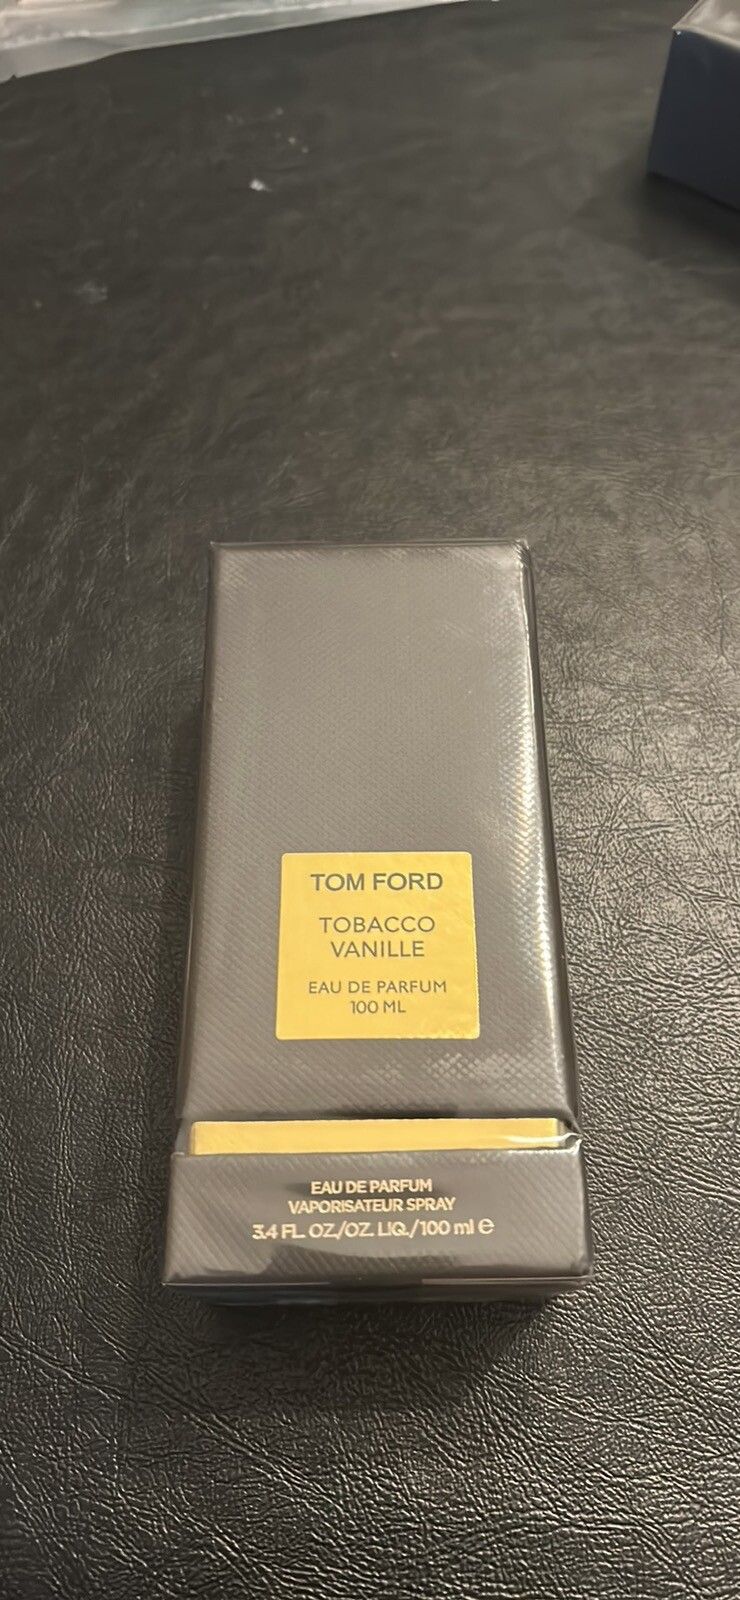 Tom Ford Tobacco Vanille Eau de Parfum 1.7fl.oz ( New In Box) - Sealed